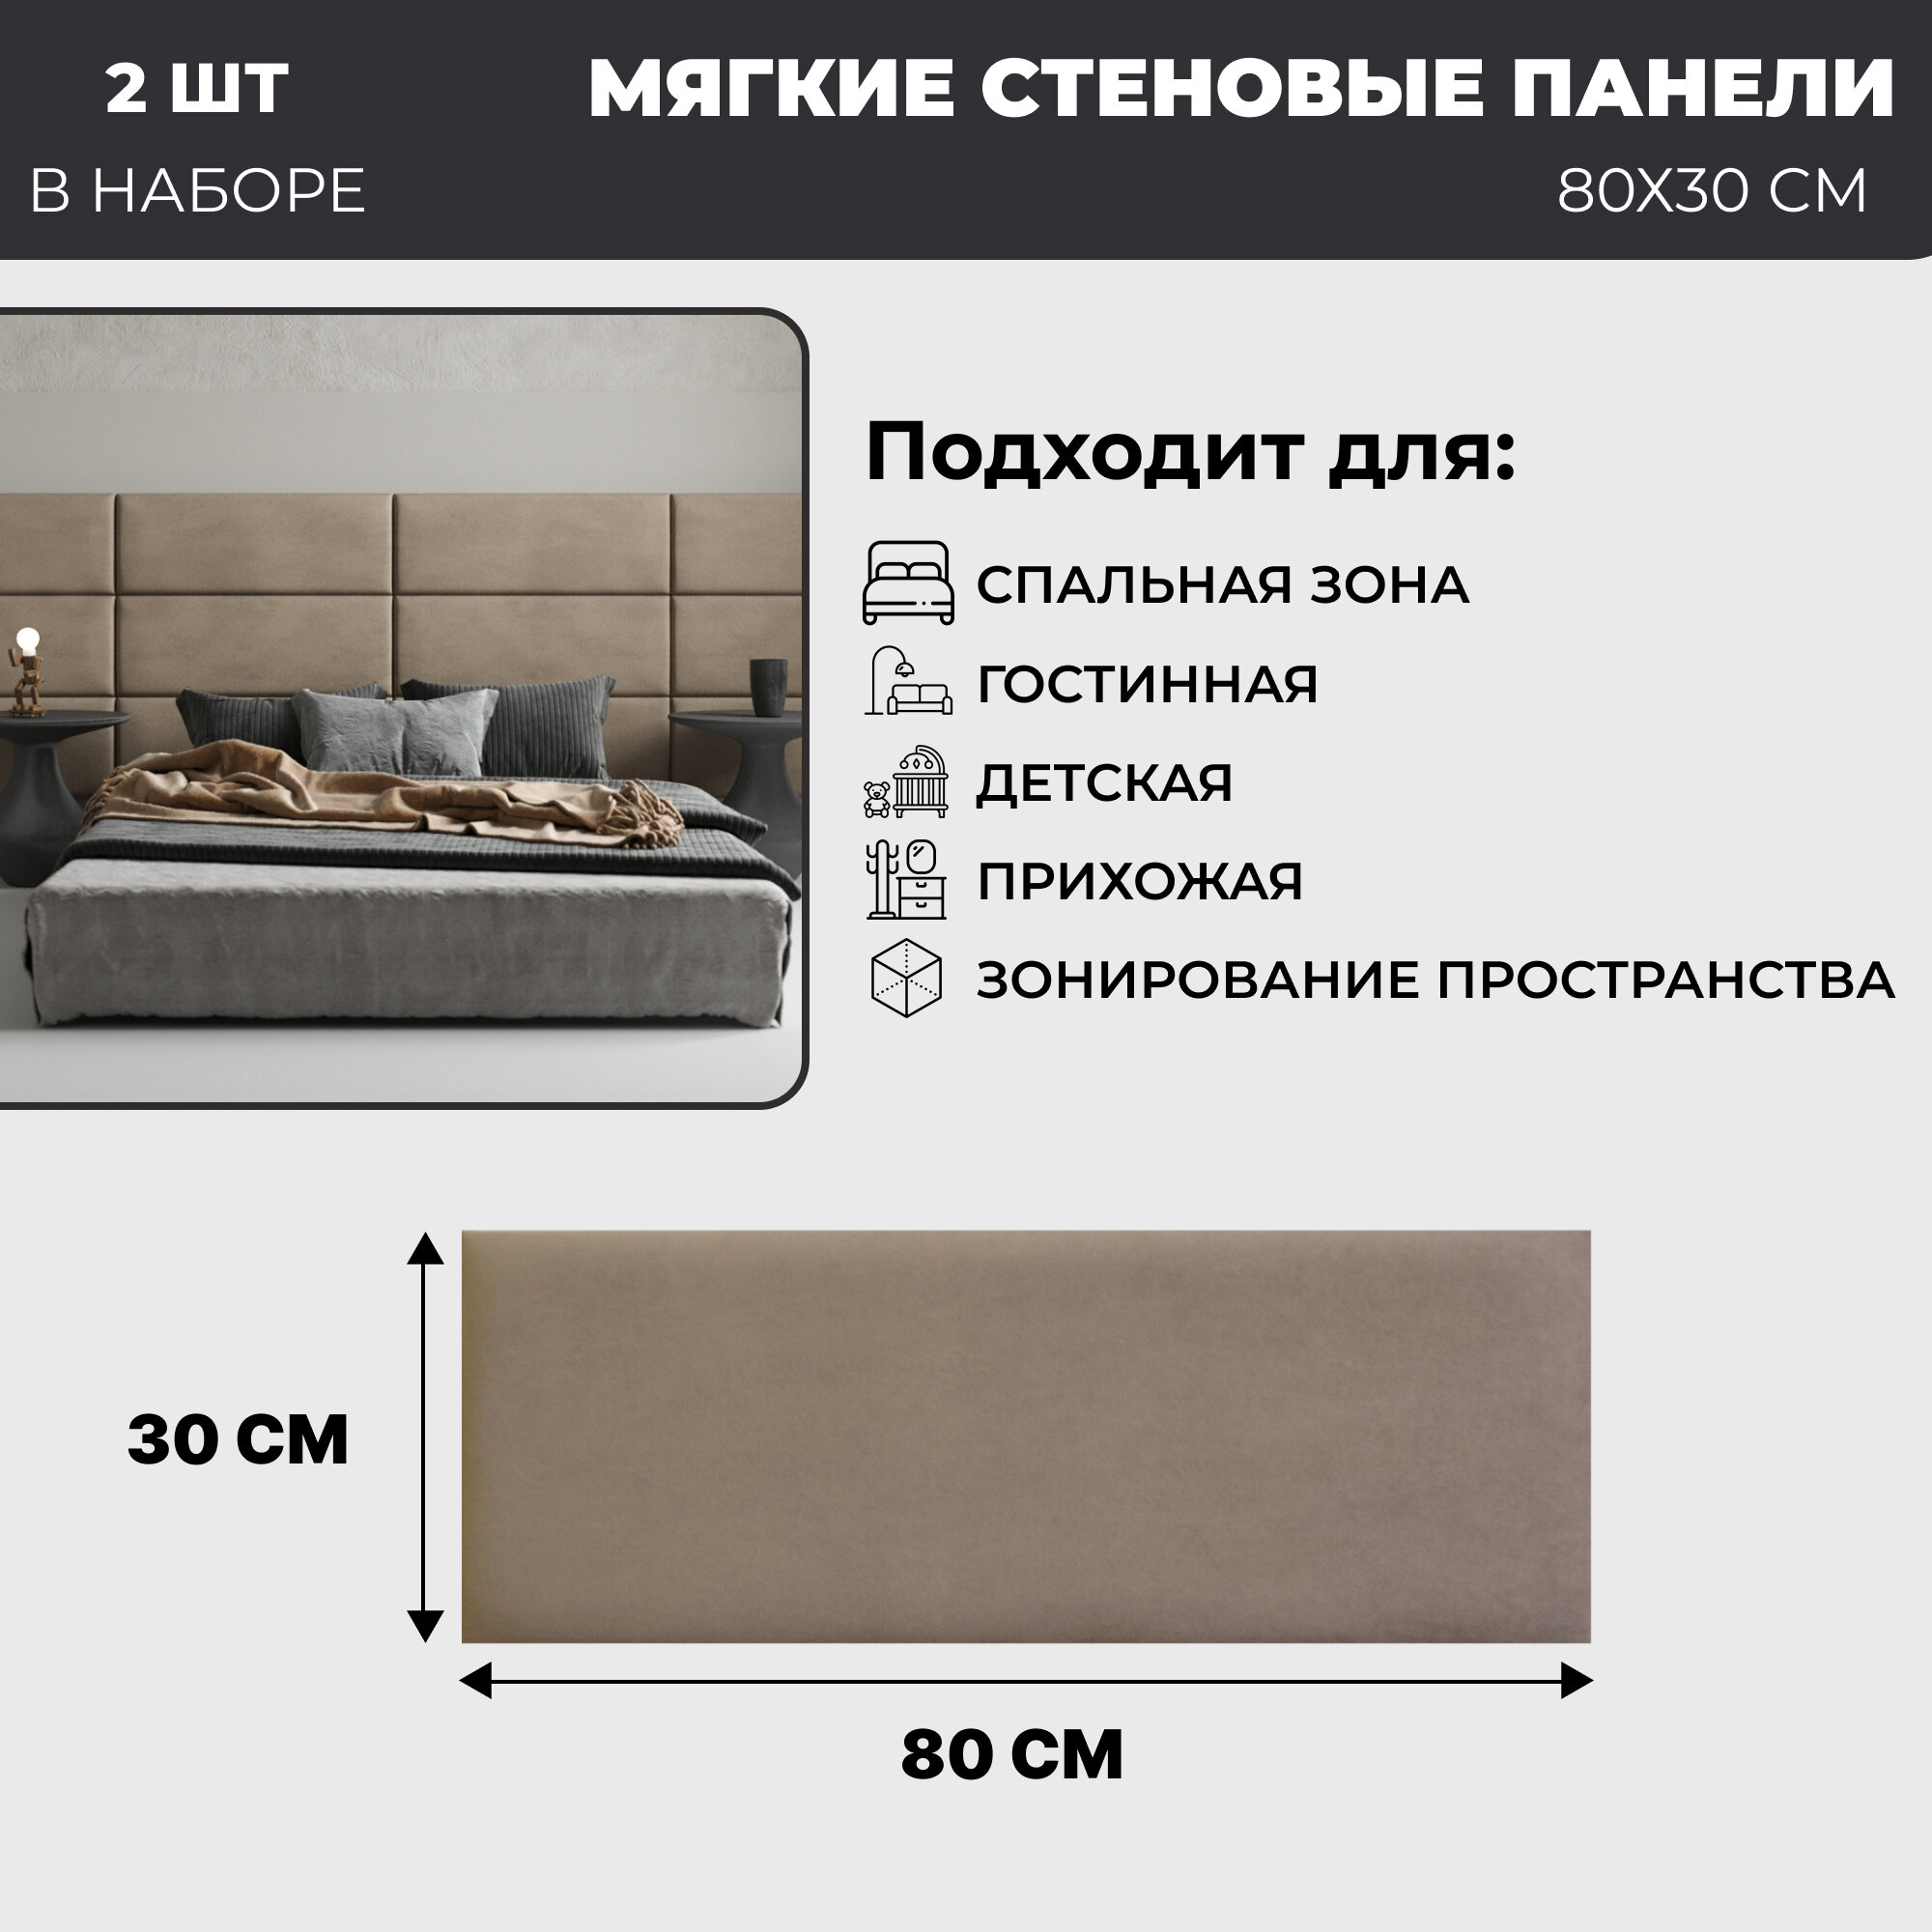 Мягкие стеновые панели, изголовье для кровати 80х30 см, комплект 2 шт, цвет бежевый